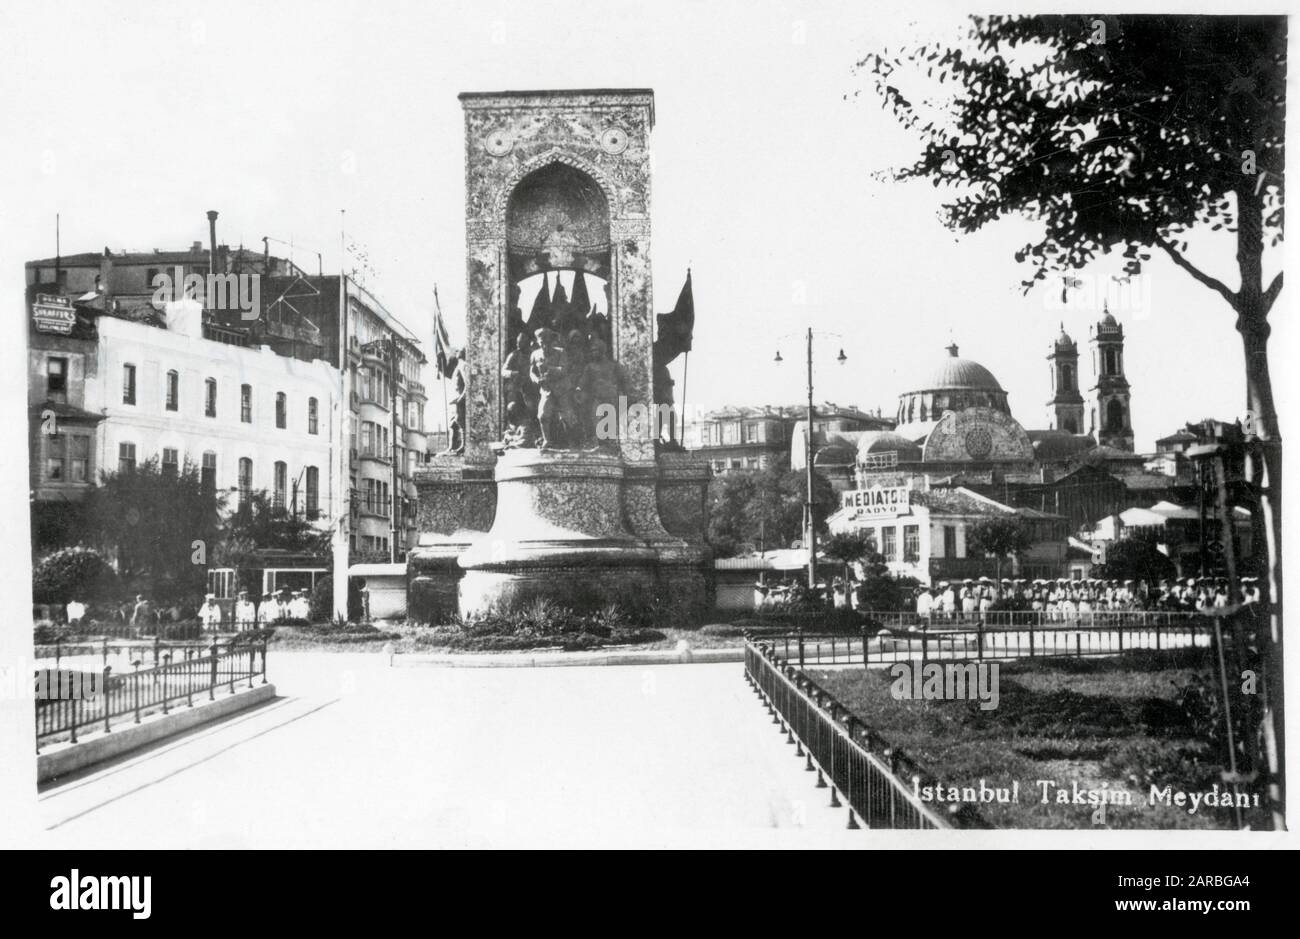 El Monumento a la República es un monumento notable situado en la plaza Taksim en Estambul, Turquía, para conmemorar la formación de la República Turca en 1923. La Iglesia Ortodoxa griega Hagia Triada es visible de nuevo a la derecha. Fecha: Hacia finales de la década de 1940 Foto de stock